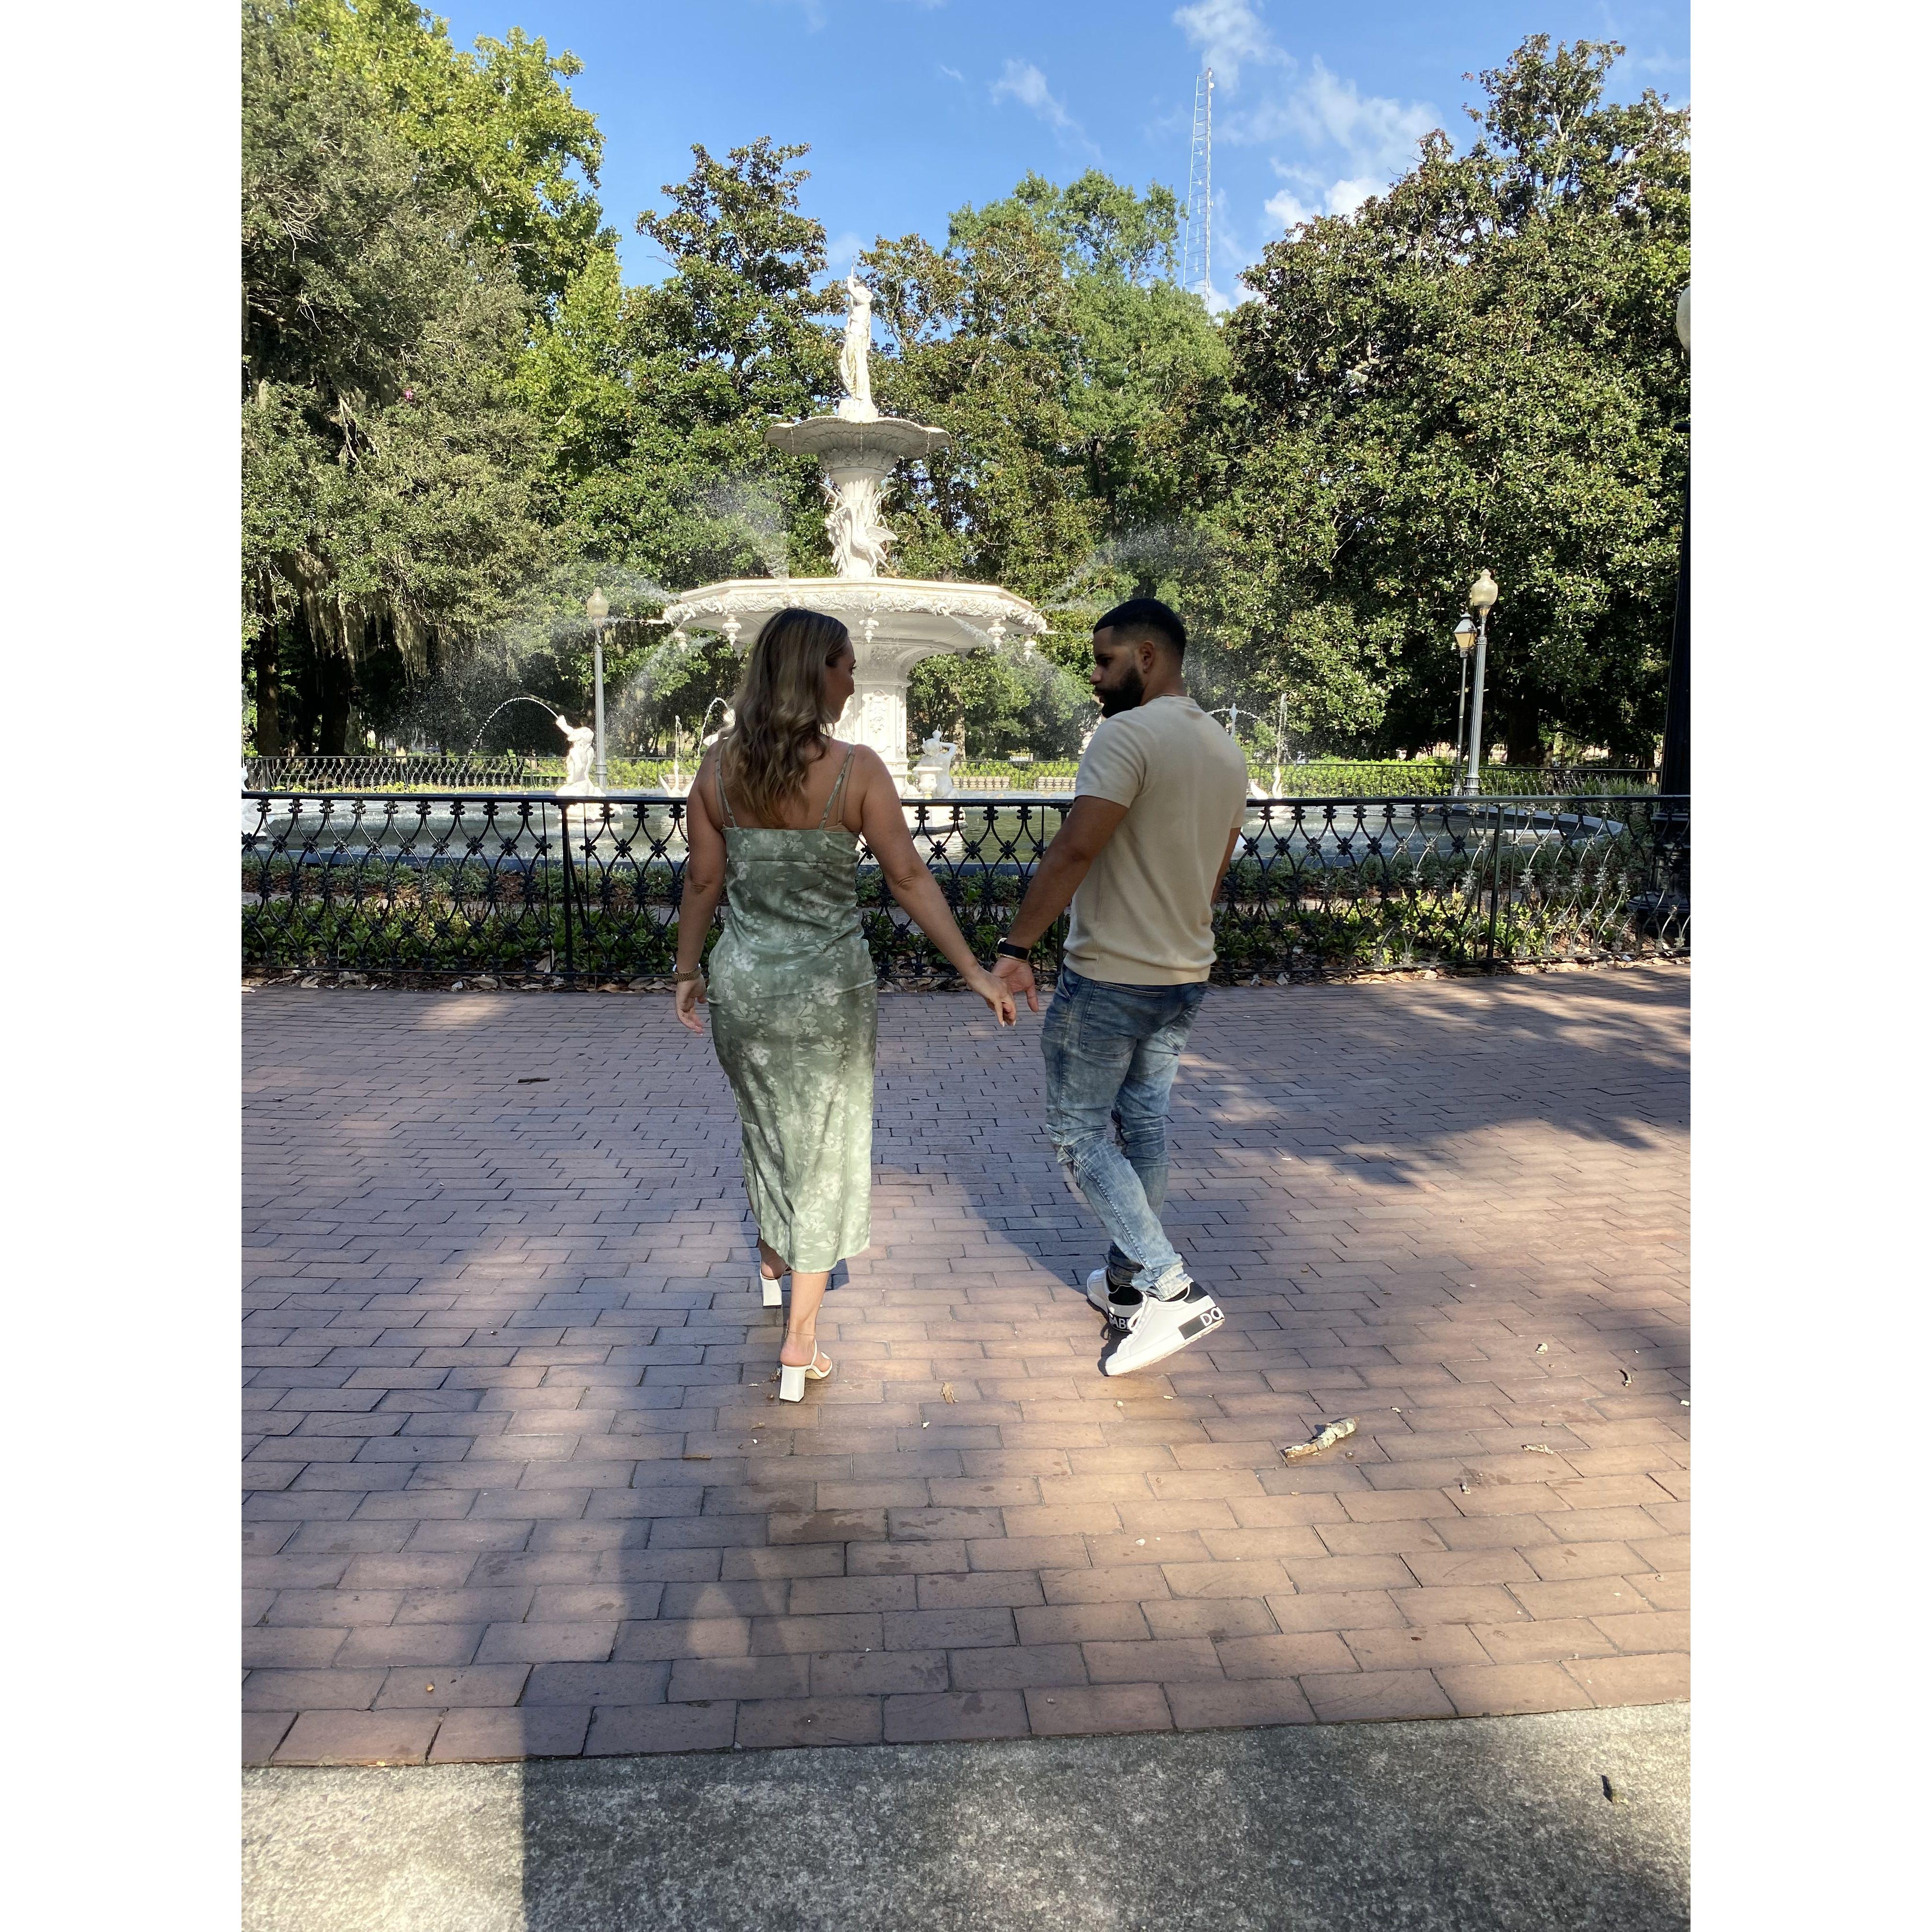 Romantic walk in Savannah, Georgia